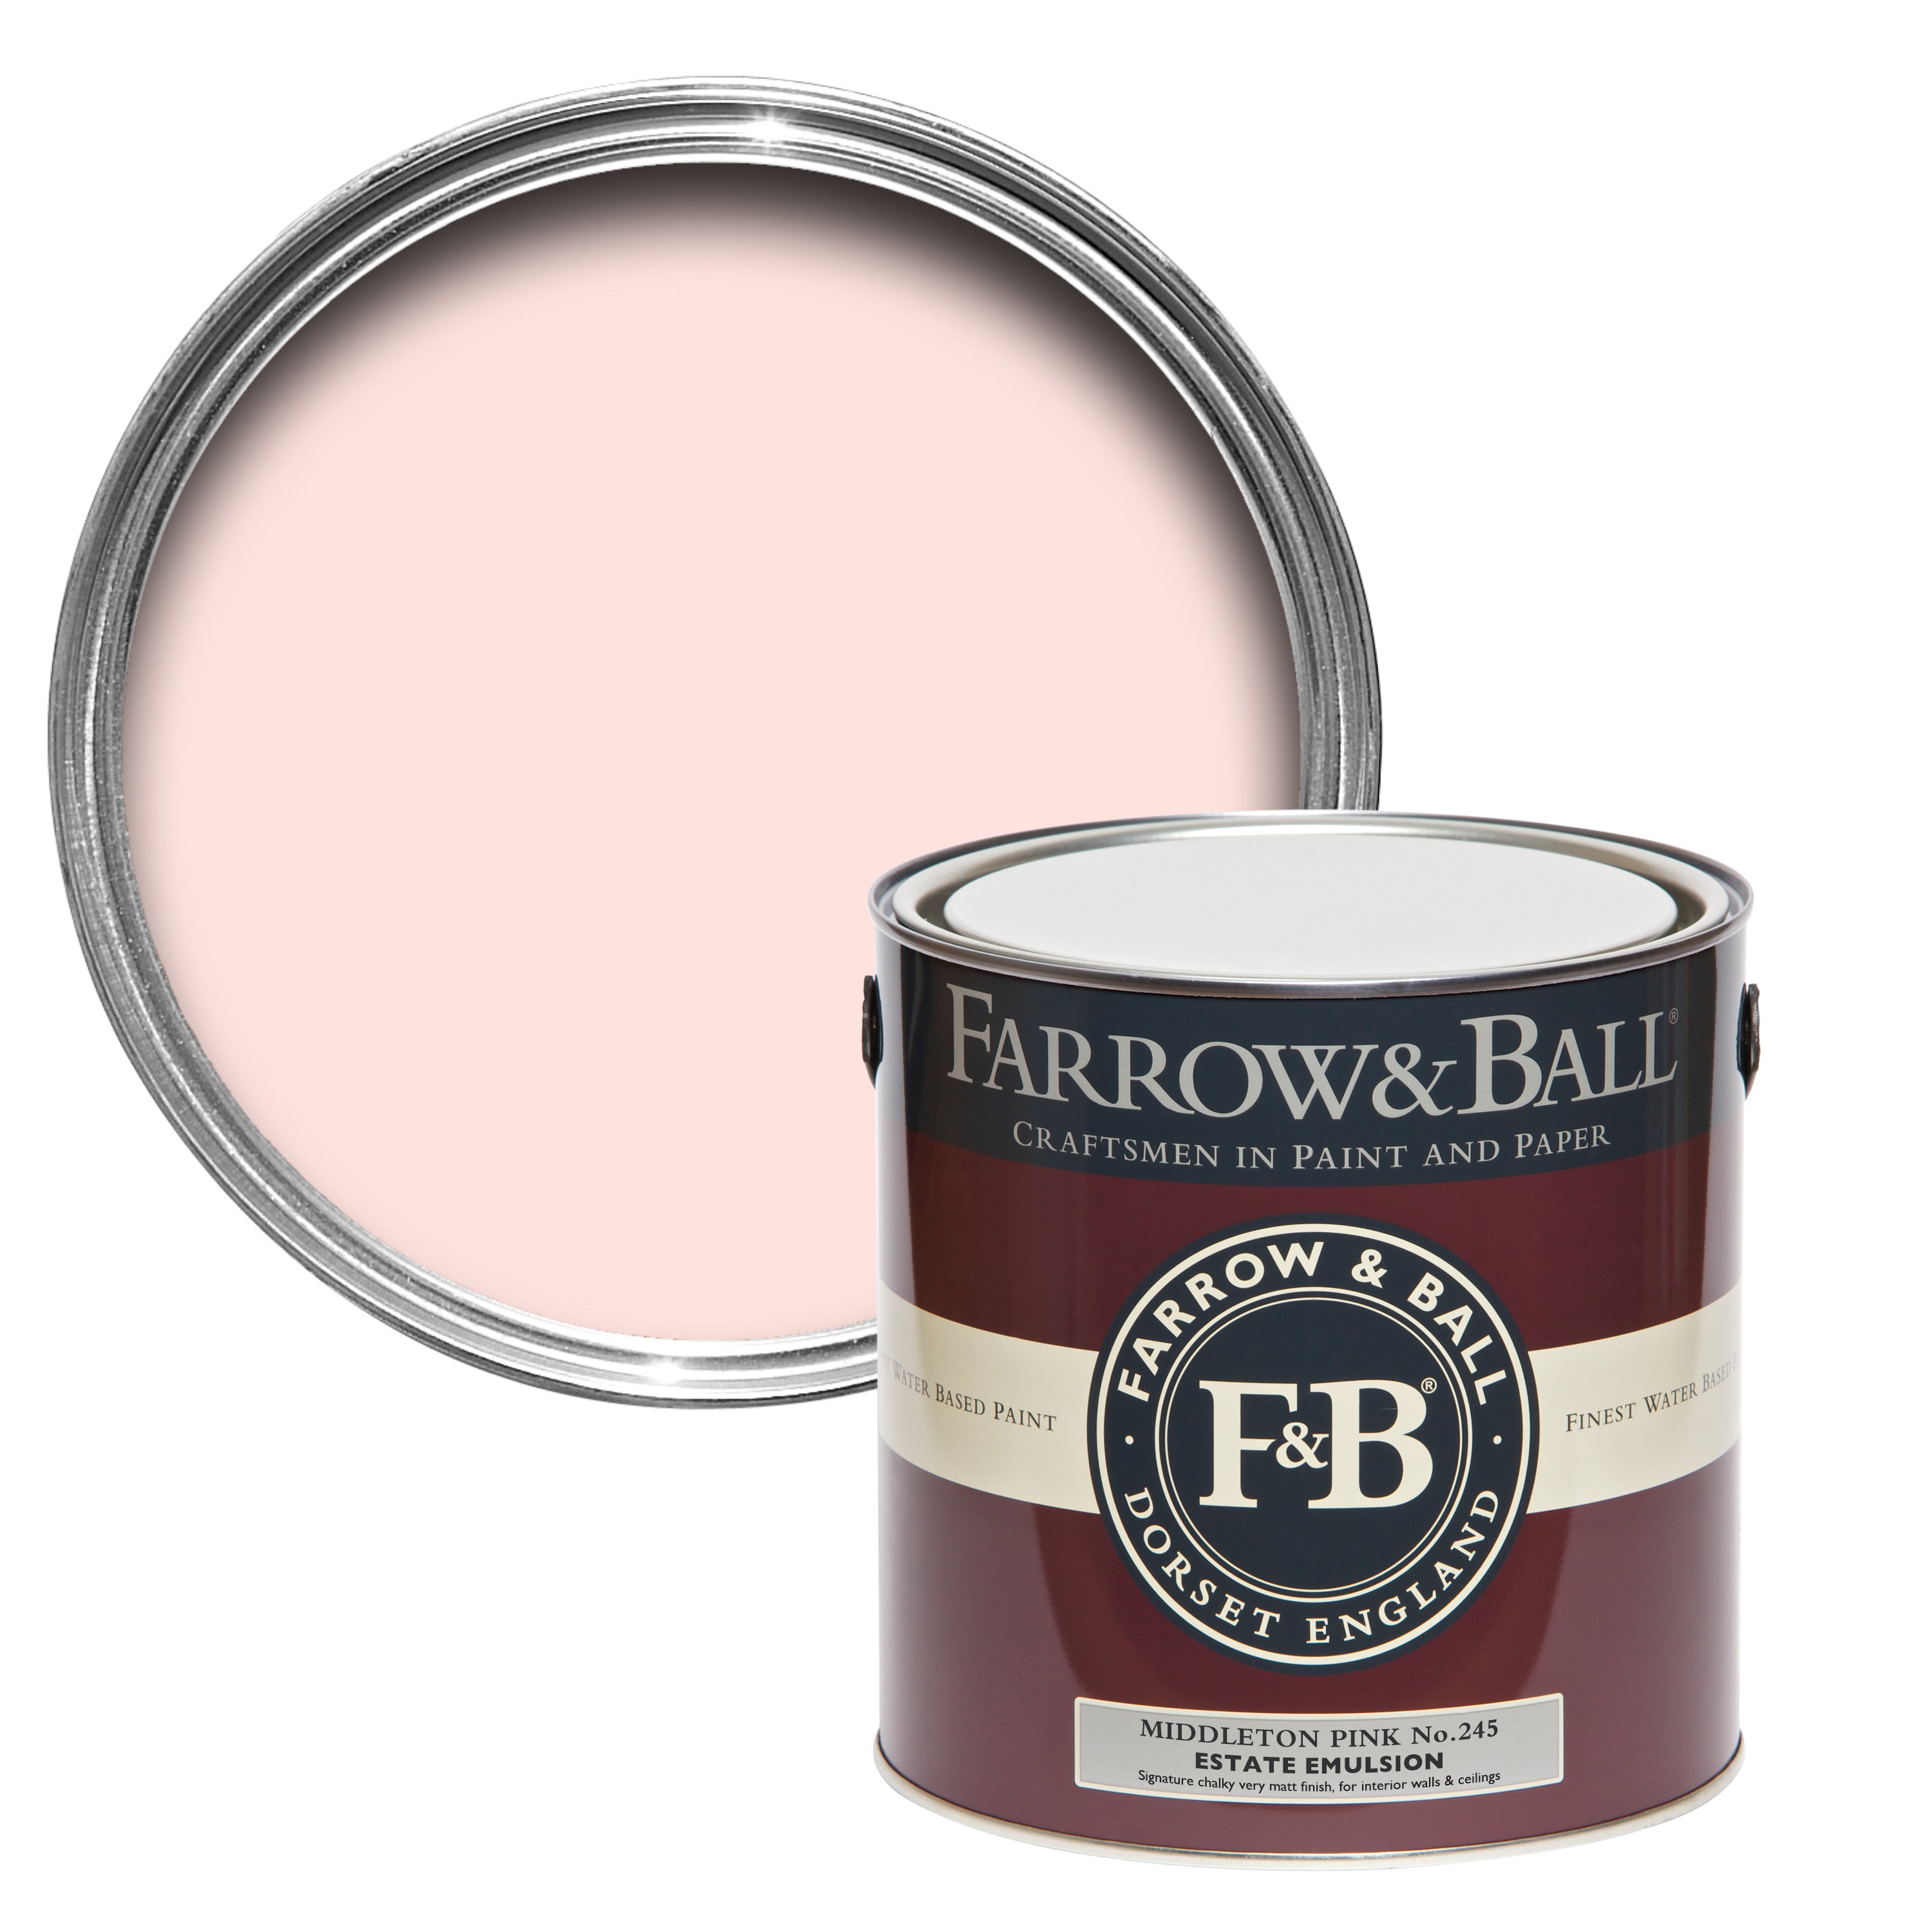 Middleton Pink No 245 | Farrow & Ball